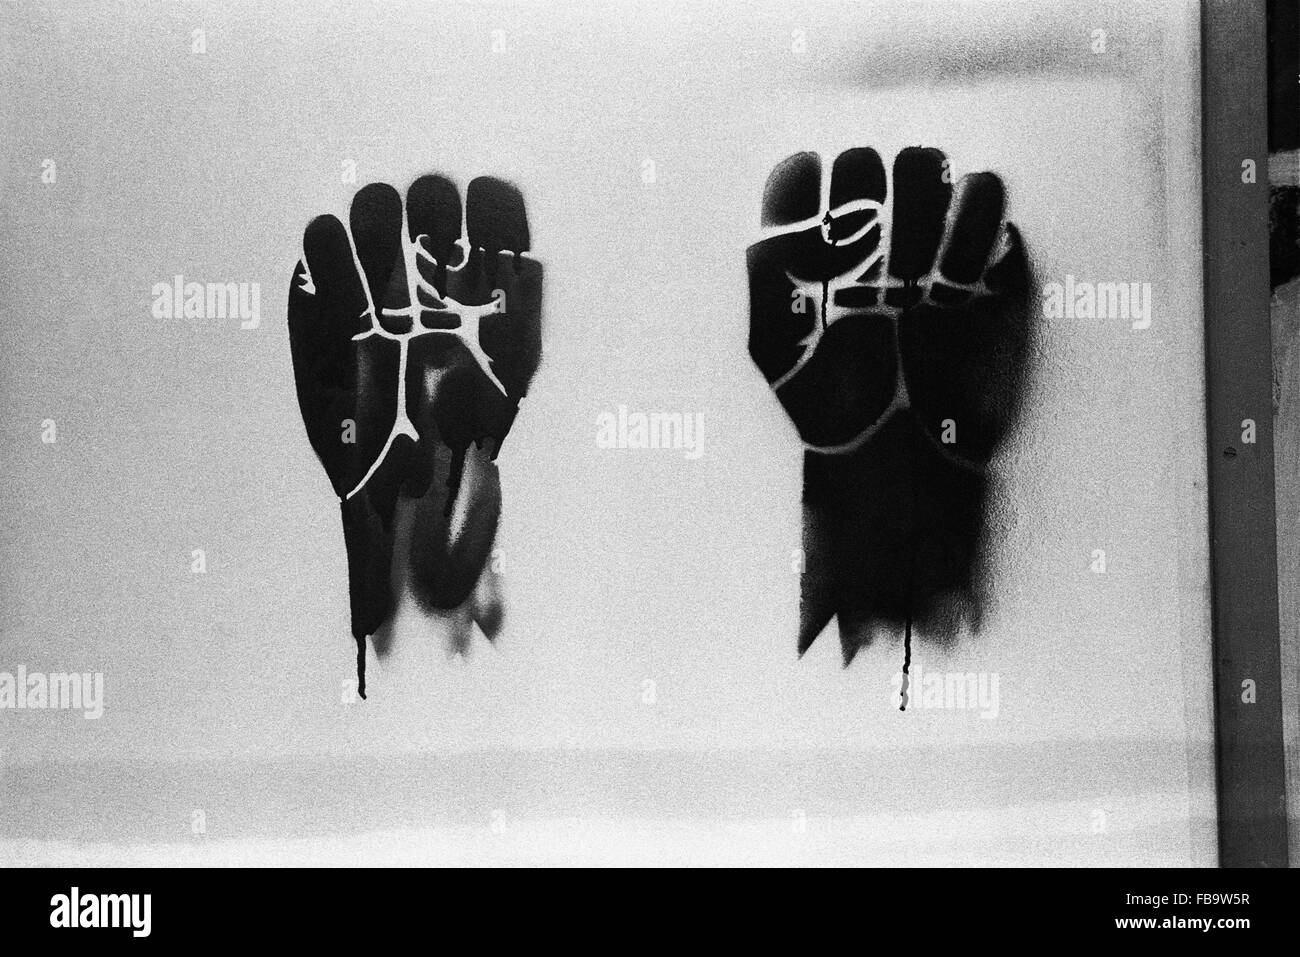 Ereignisse von 1968. -1968 Veranstaltungen. -2 Fäuste: ein Symbol der Protestbewegung im Jahr 1968.   -Philippe Gras / Le Pictorium Stockfoto